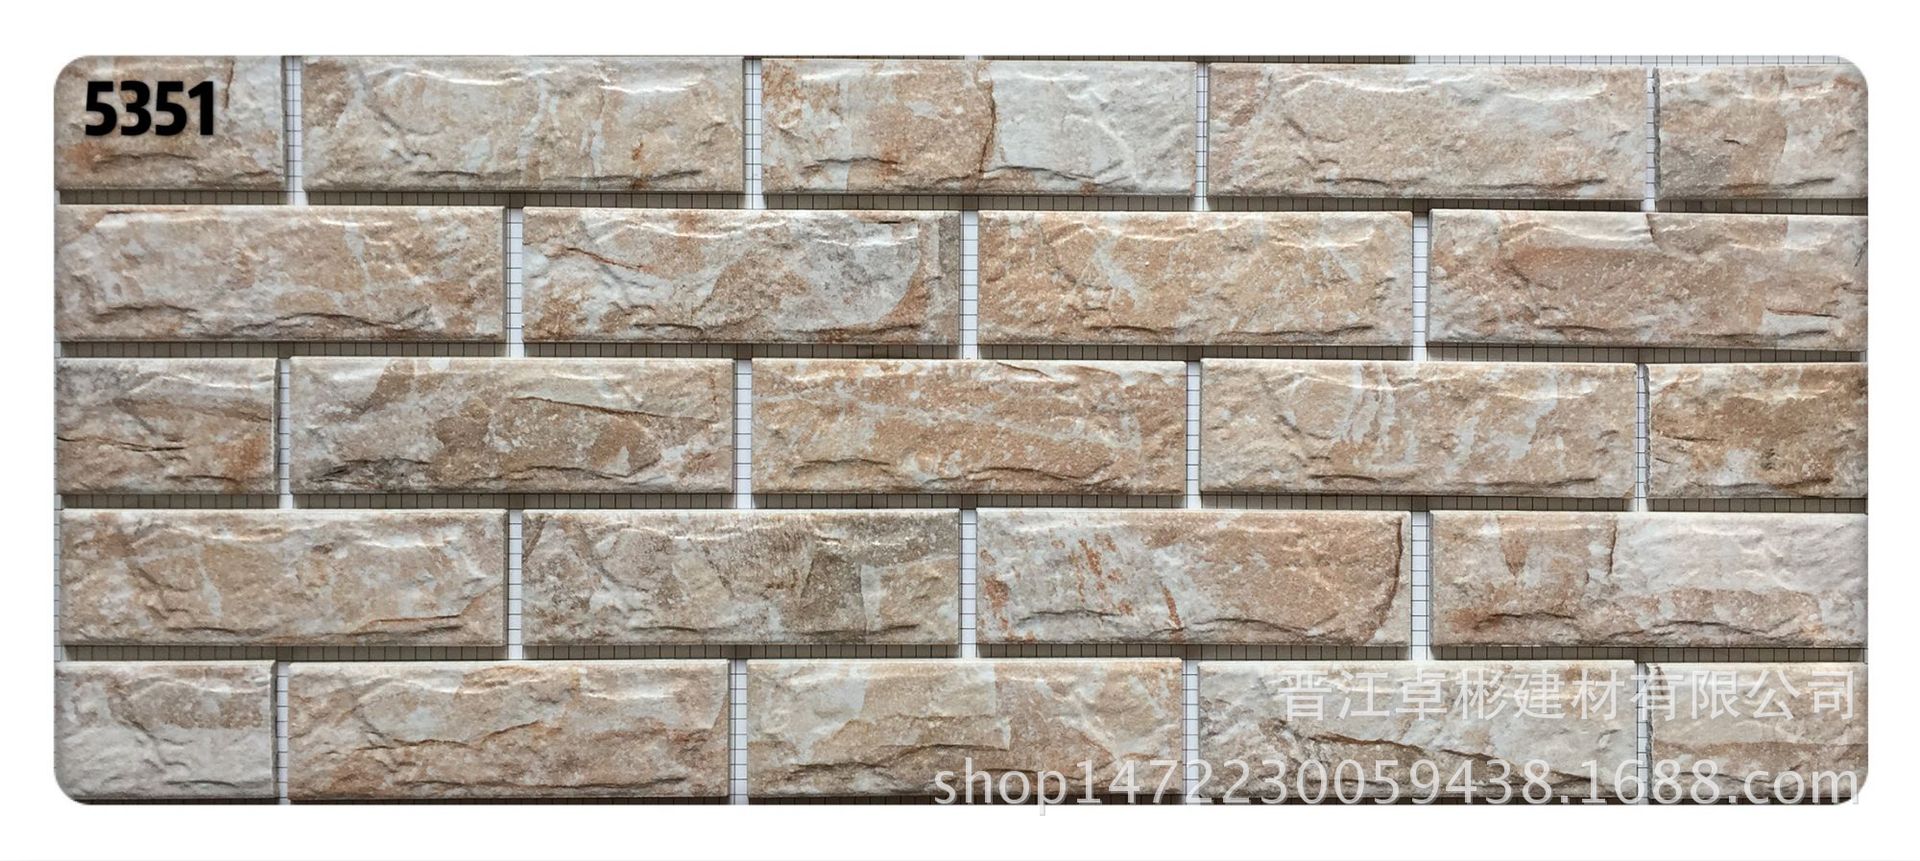 福建厂家9D喷墨瓷砖45mmX145mm 纸皮砖 喷墨 外墙砖 秀石面-阿里巴巴